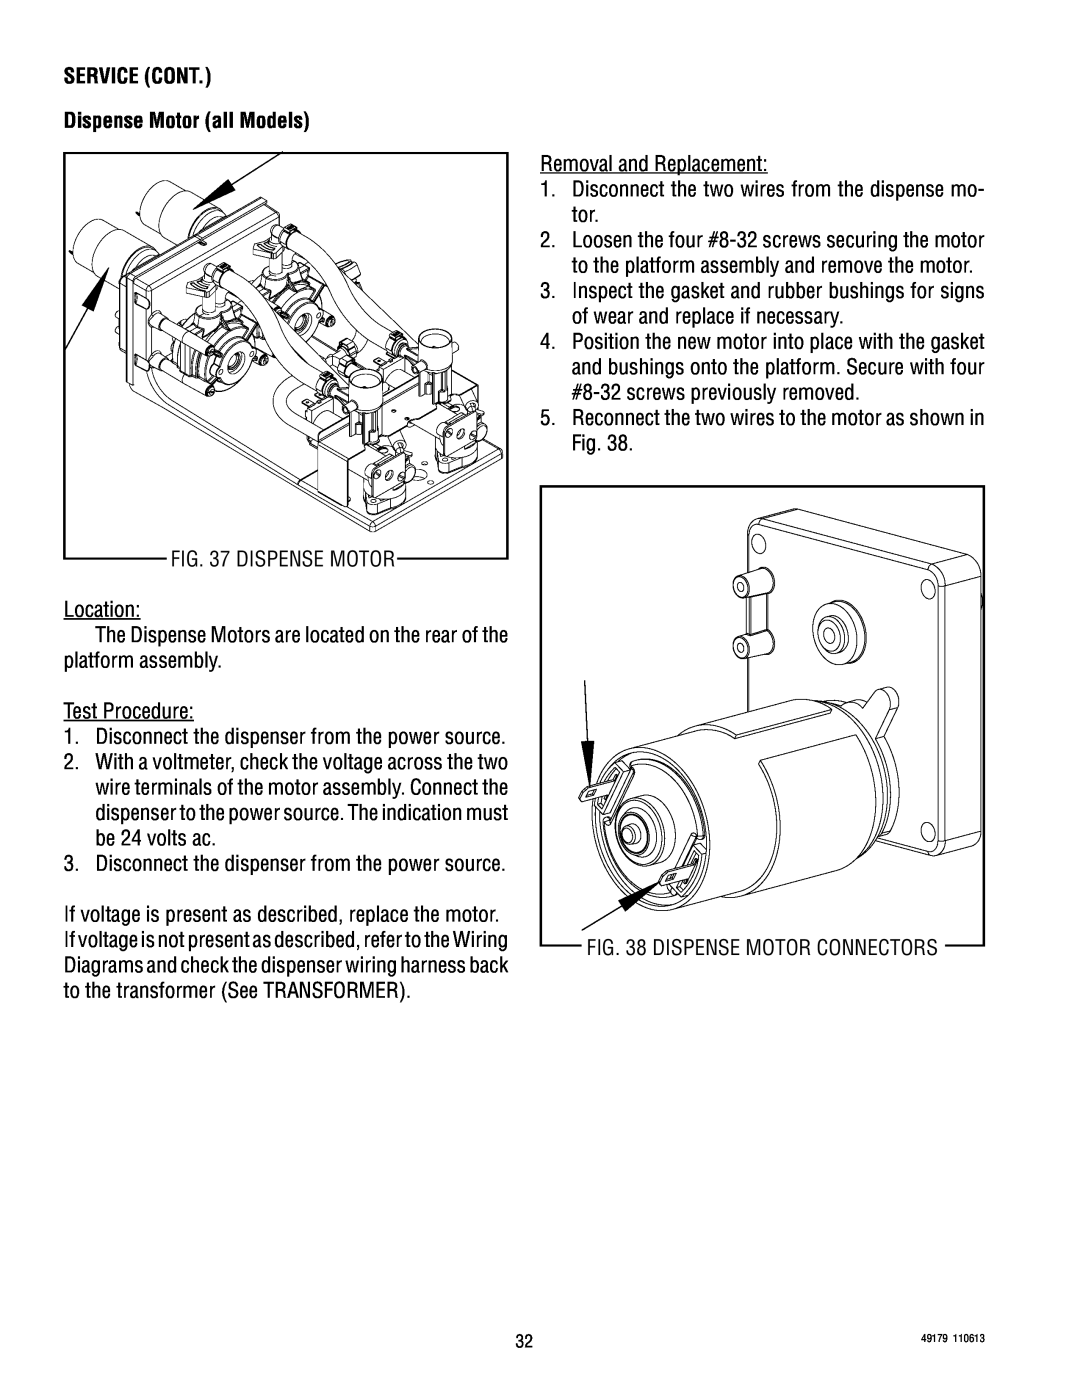 Bunn JDF-4D, JDF-4SB manual SERVICE CONT Dispense Motor all Models, Dispense Motor Connectors 